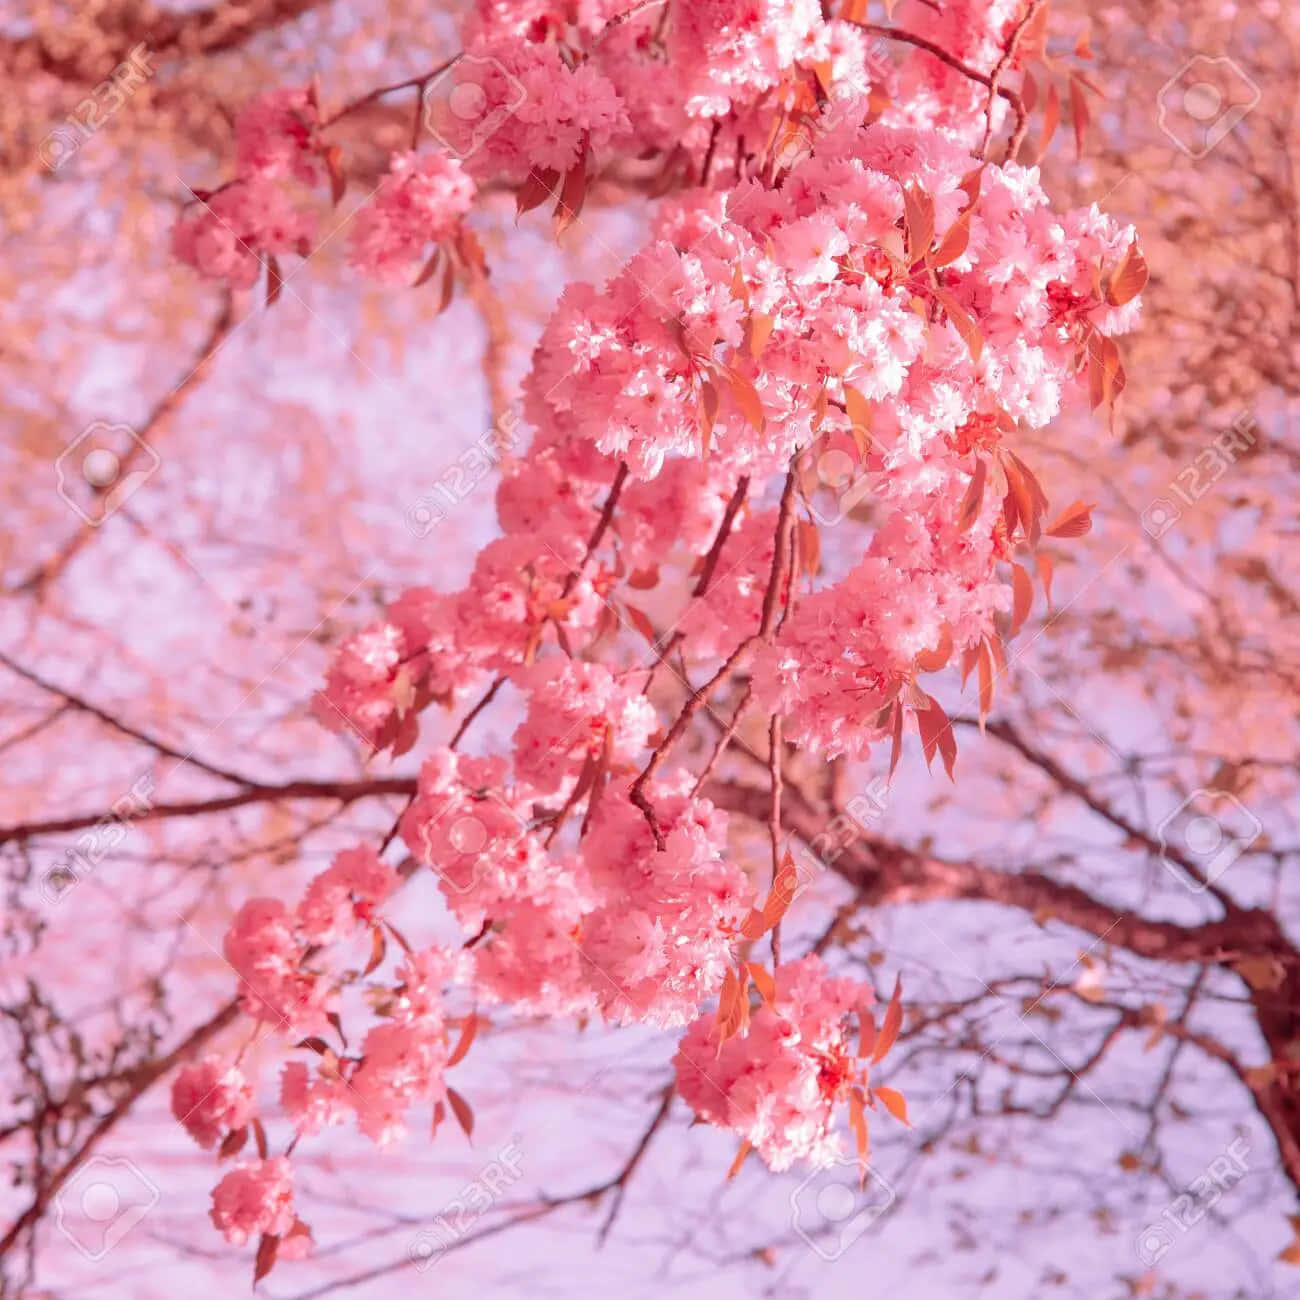 Nyd skønheden af sakura blomst, som kirsebærtræer blomstre! Wallpaper